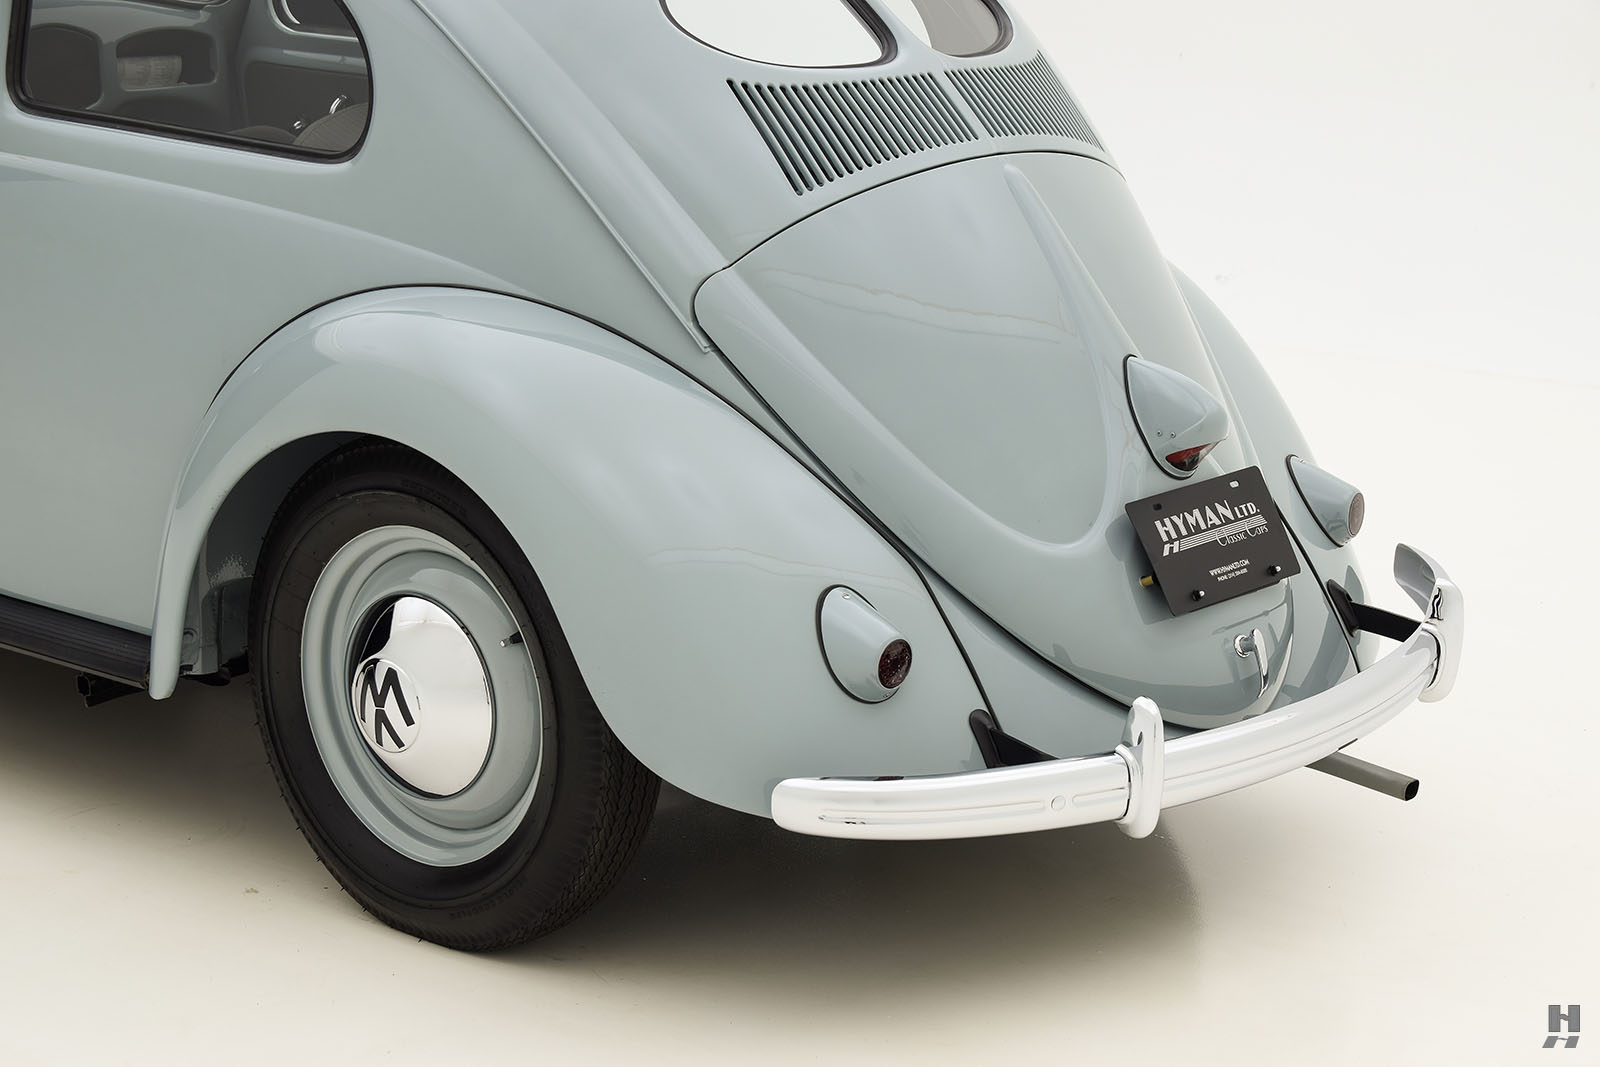 1953 volkswagen beetle